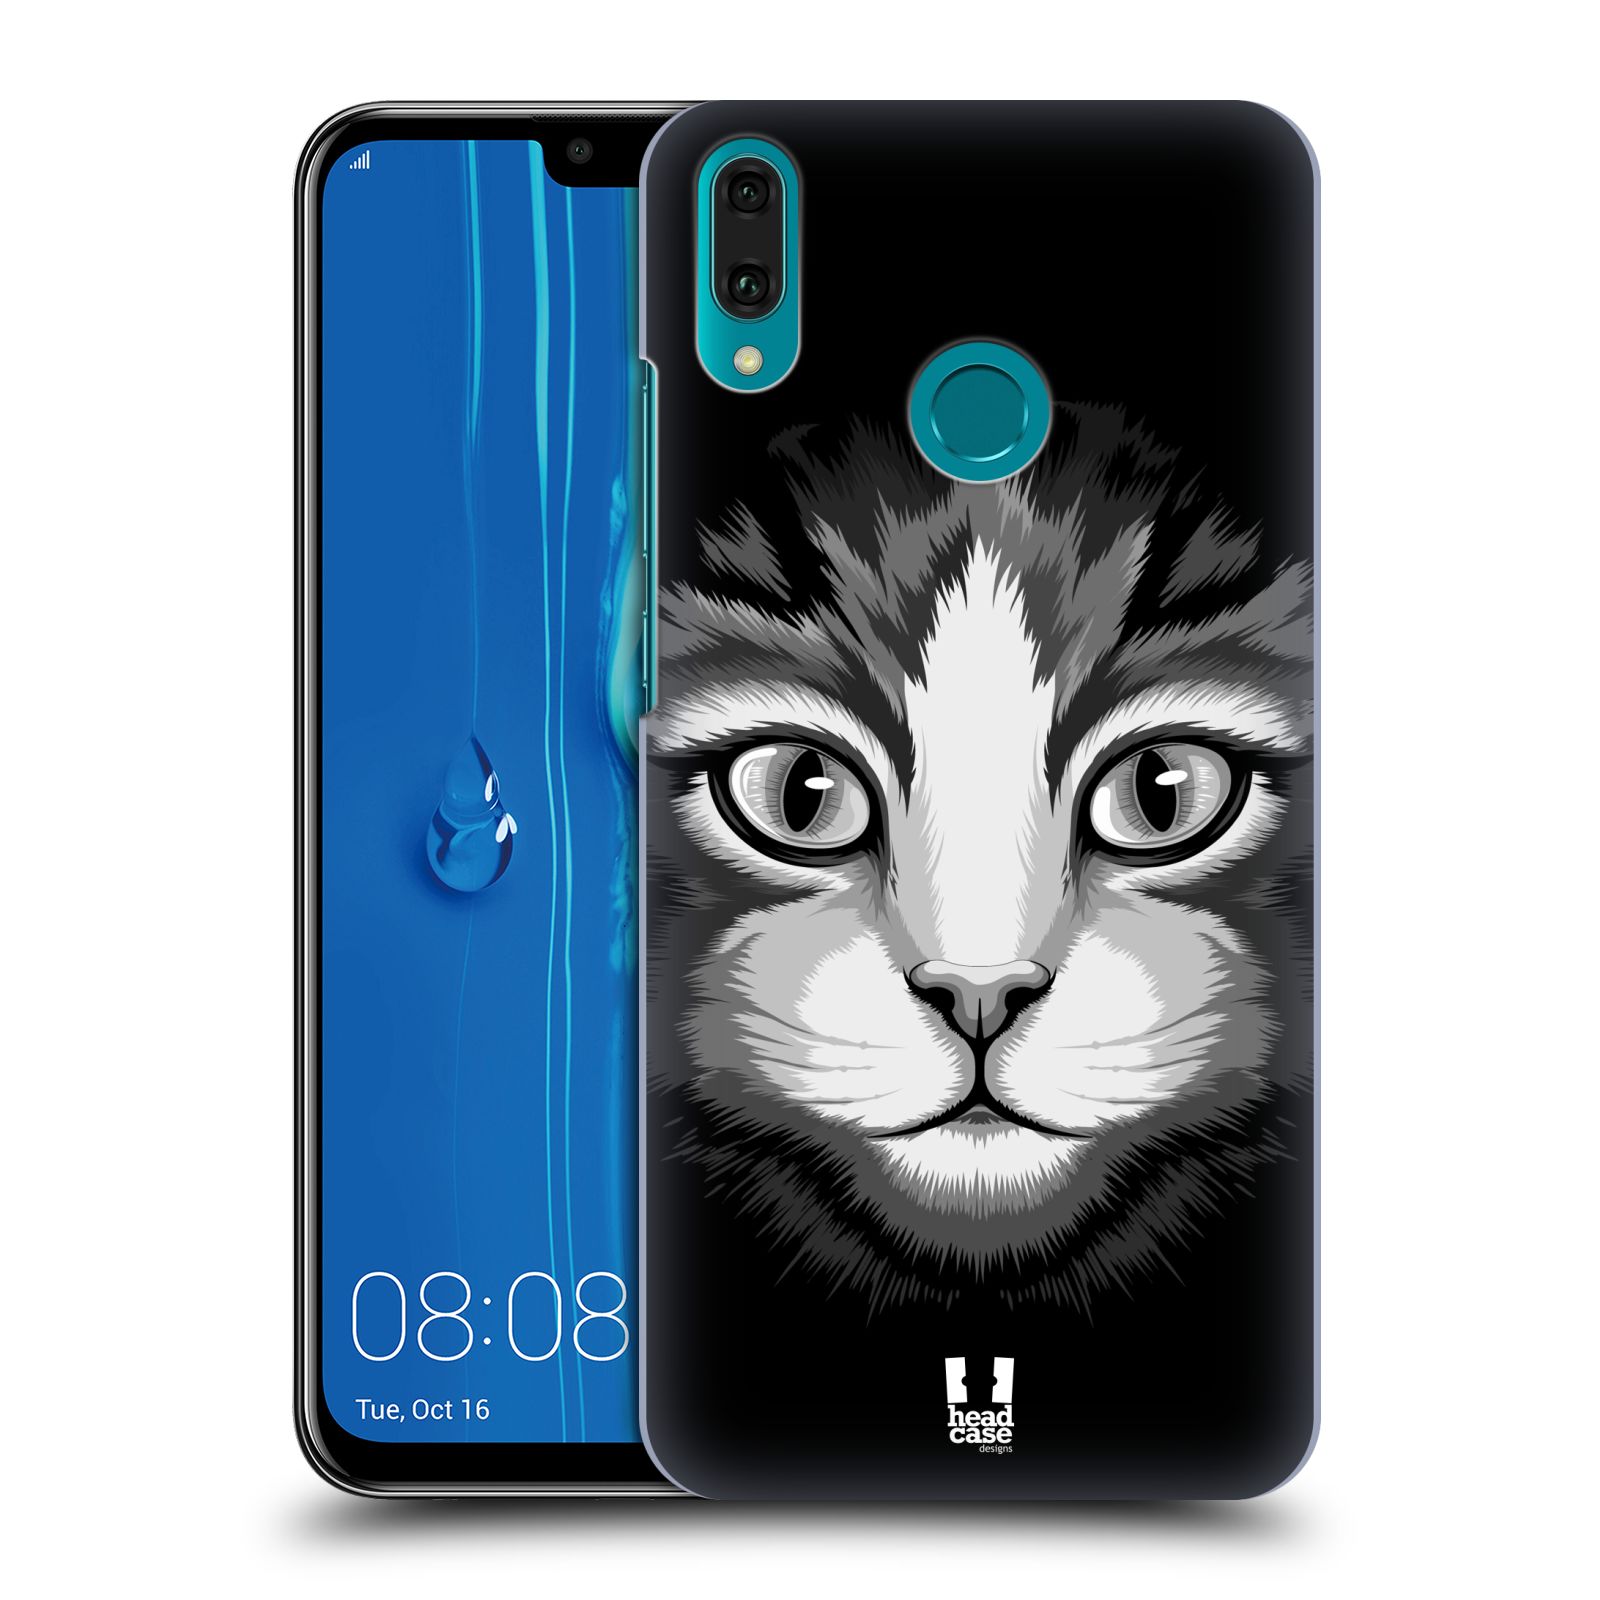 Pouzdro na mobil Huawei Y9 2019 - HEAD CASE - vzor Zvíře kreslená tvář 2 kočička